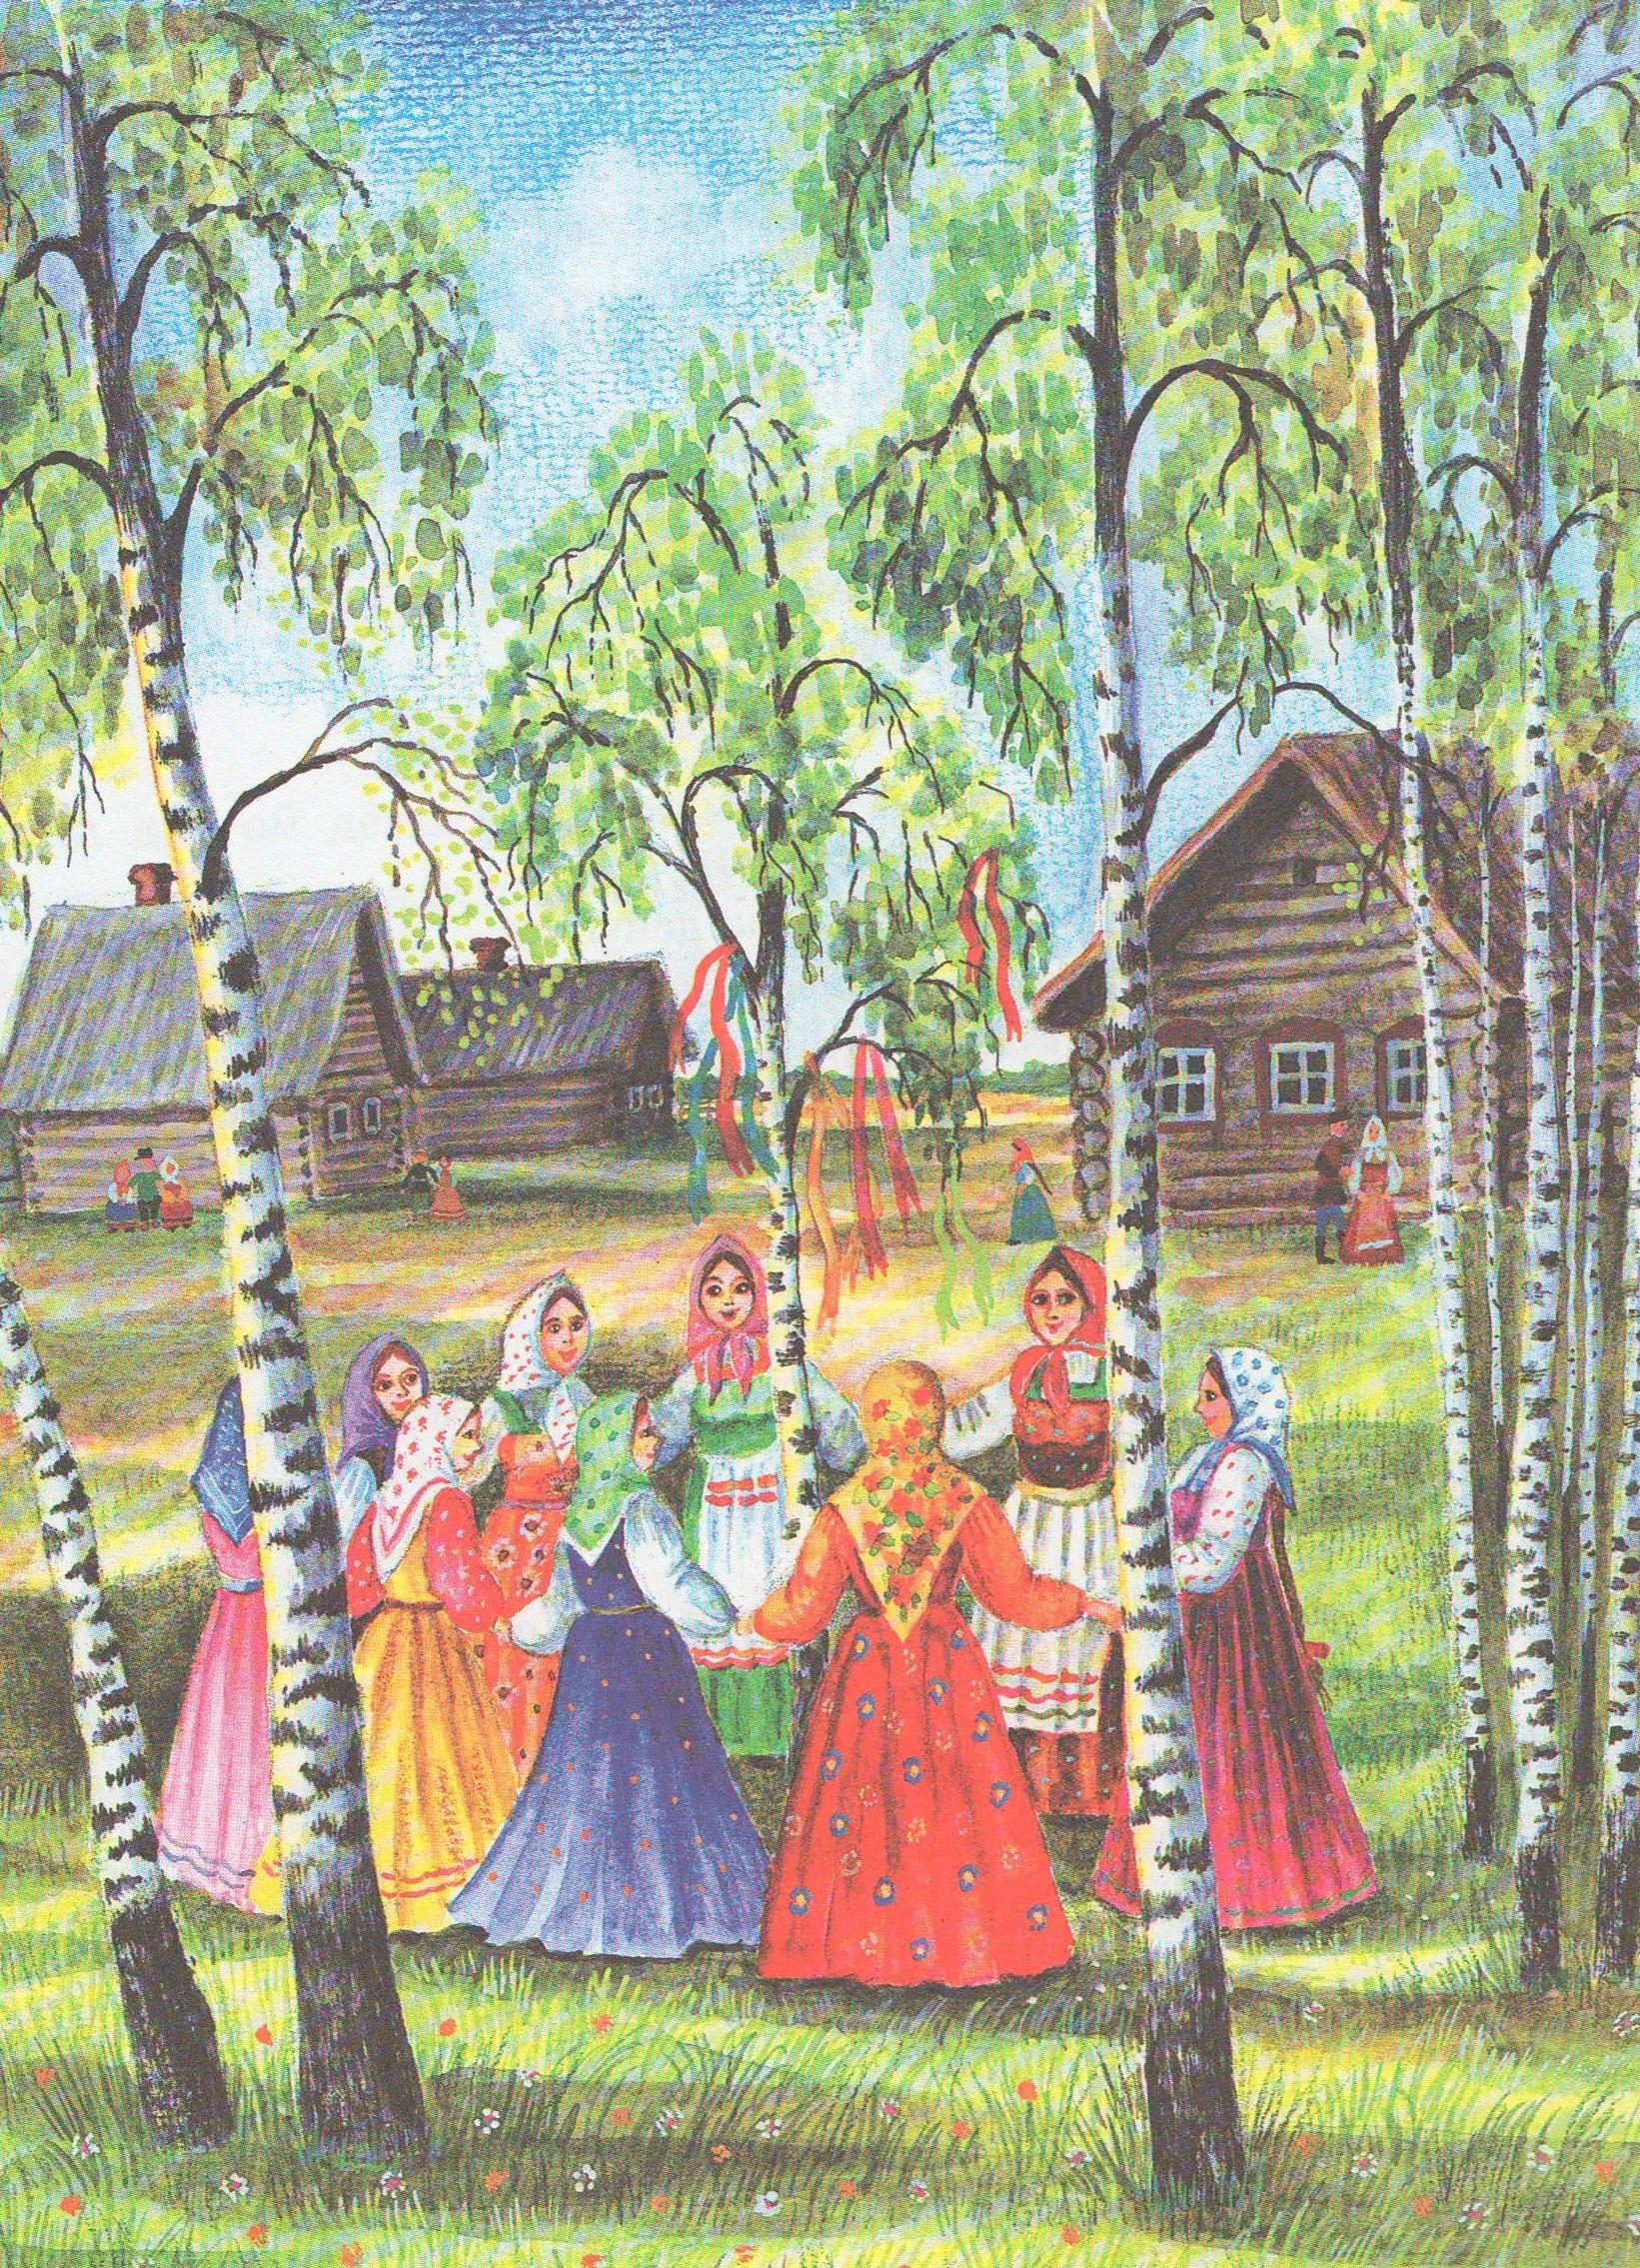 Иллюстрации народных праздников